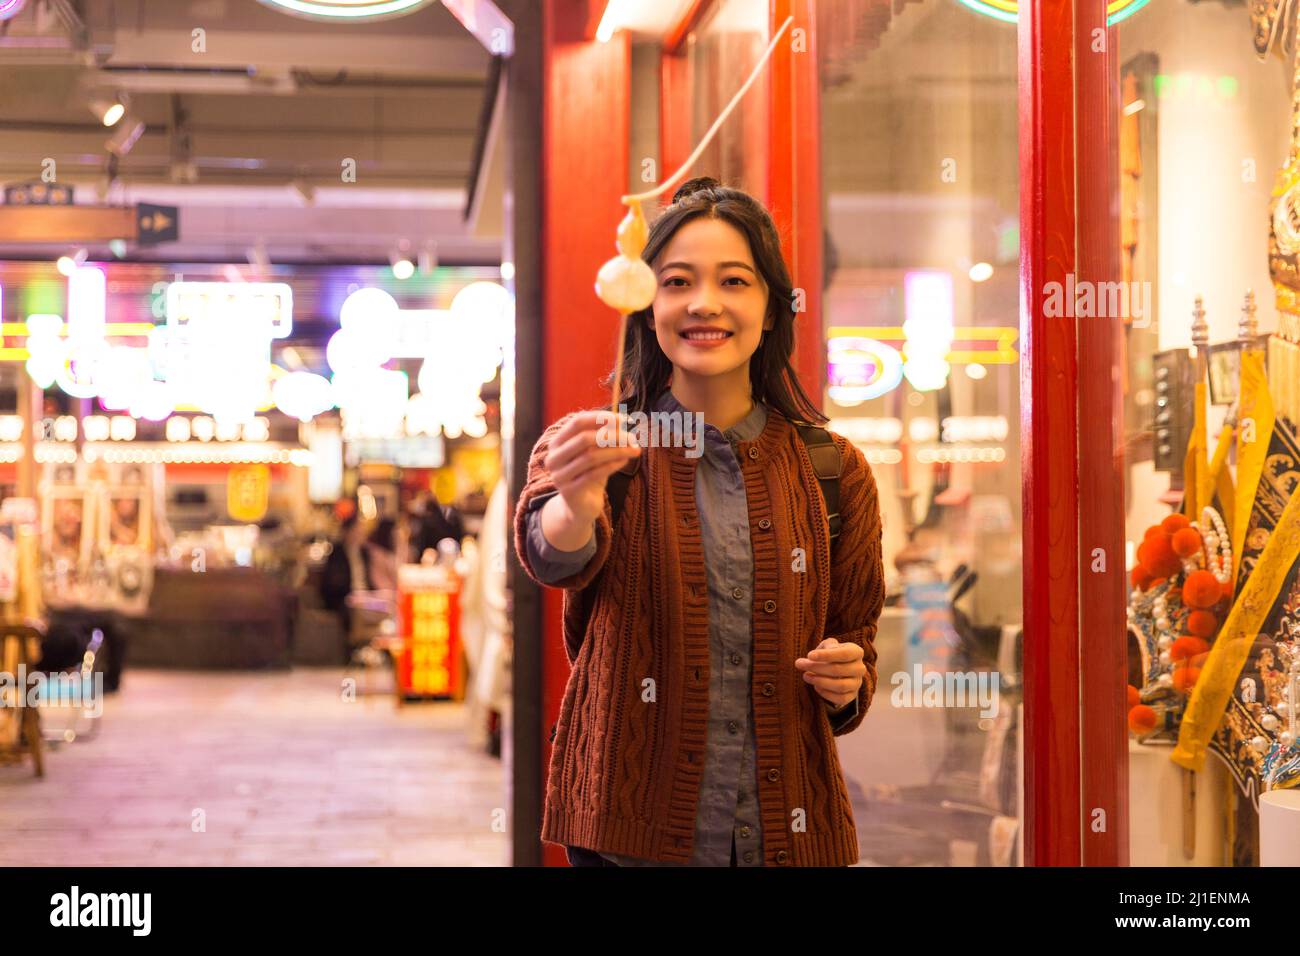 Lächelnde weibliche College-Studentin, die kalabaschförmige Zuckerfiguren mit der Kamera teilt - Stock-Foto Stockfoto